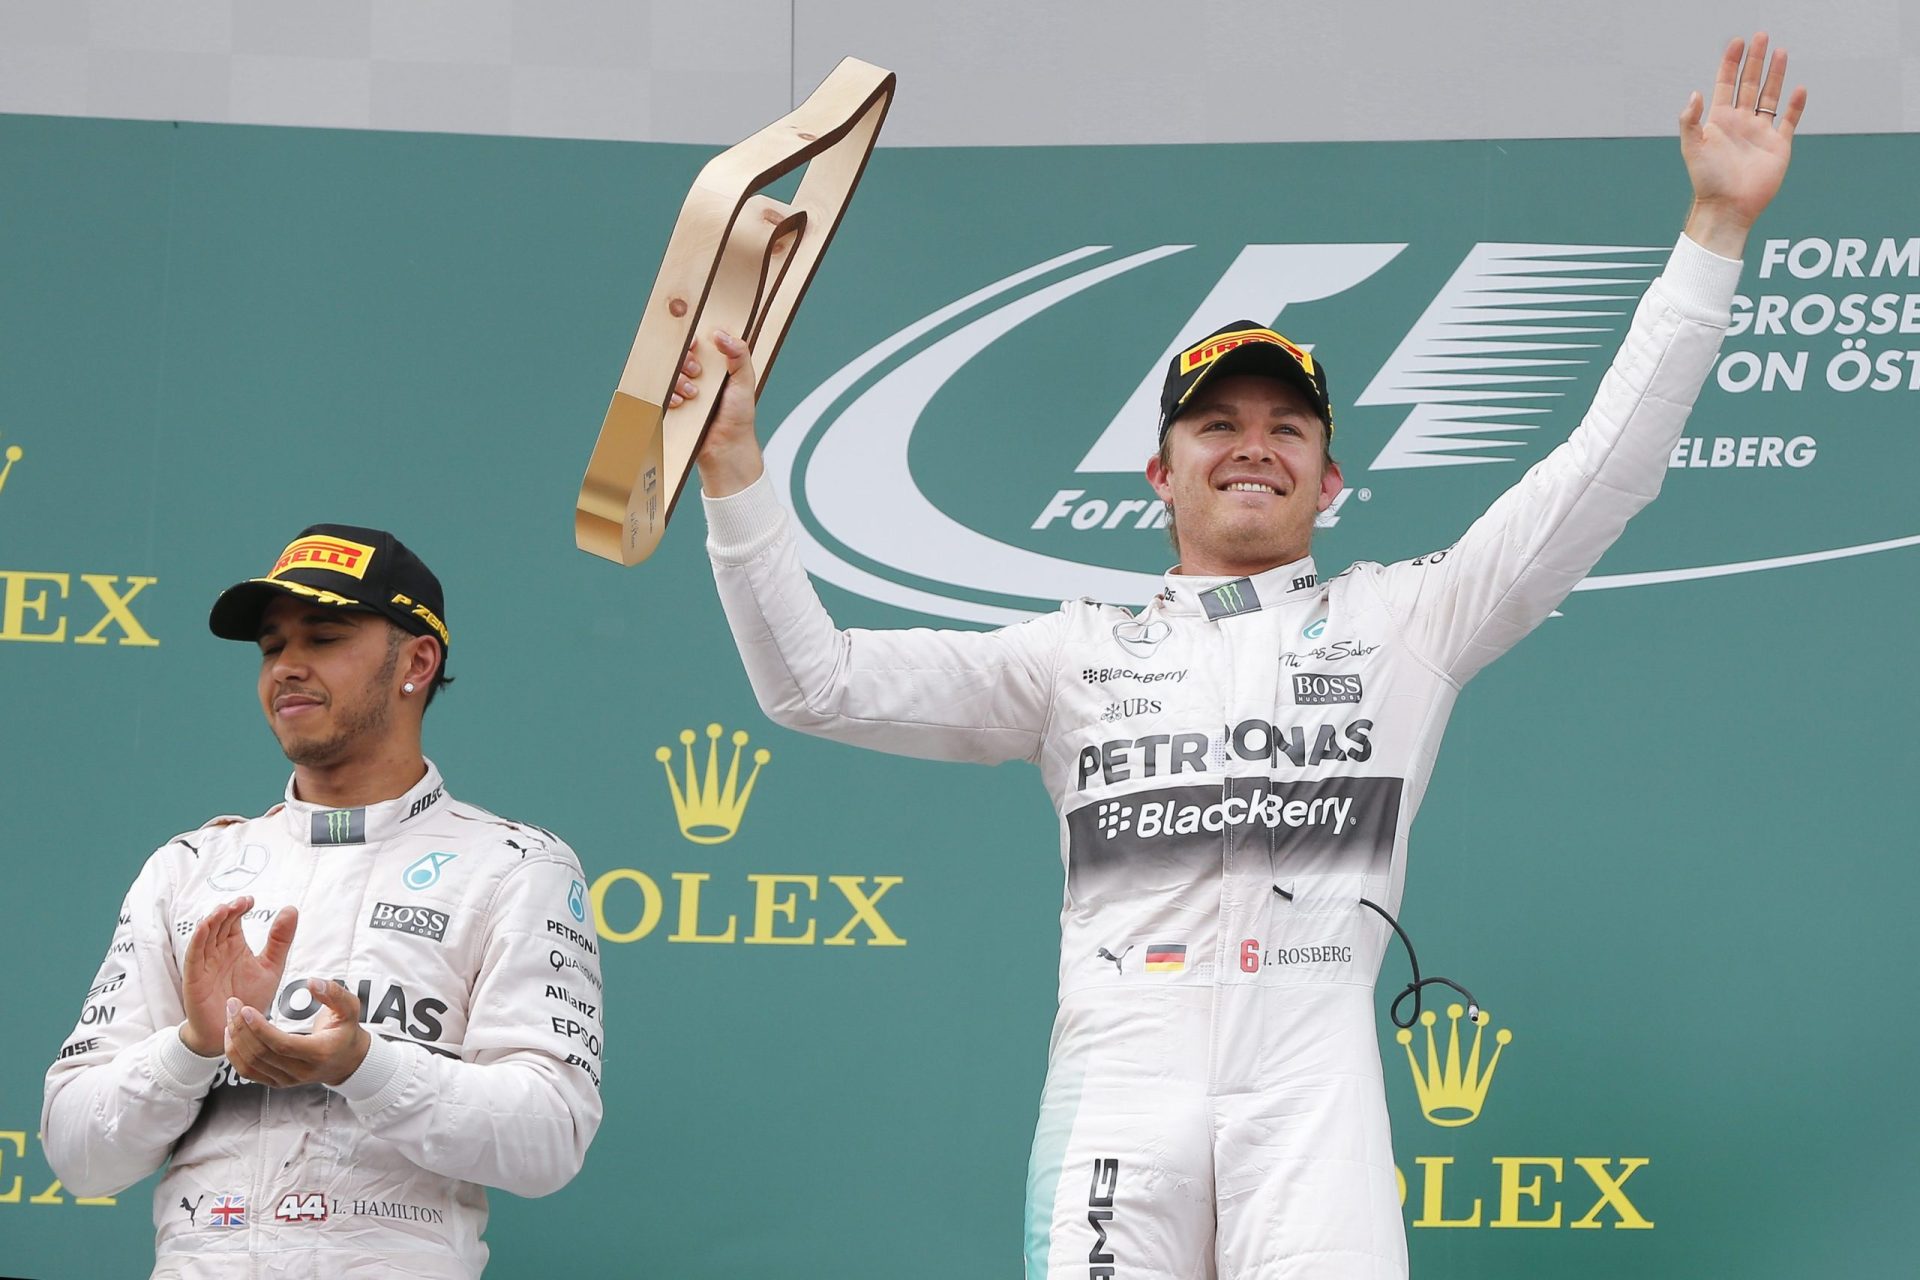 Fórmula 1. Rosberg vence GP da Áustria e aproxima-se de Hamilton no Mundial